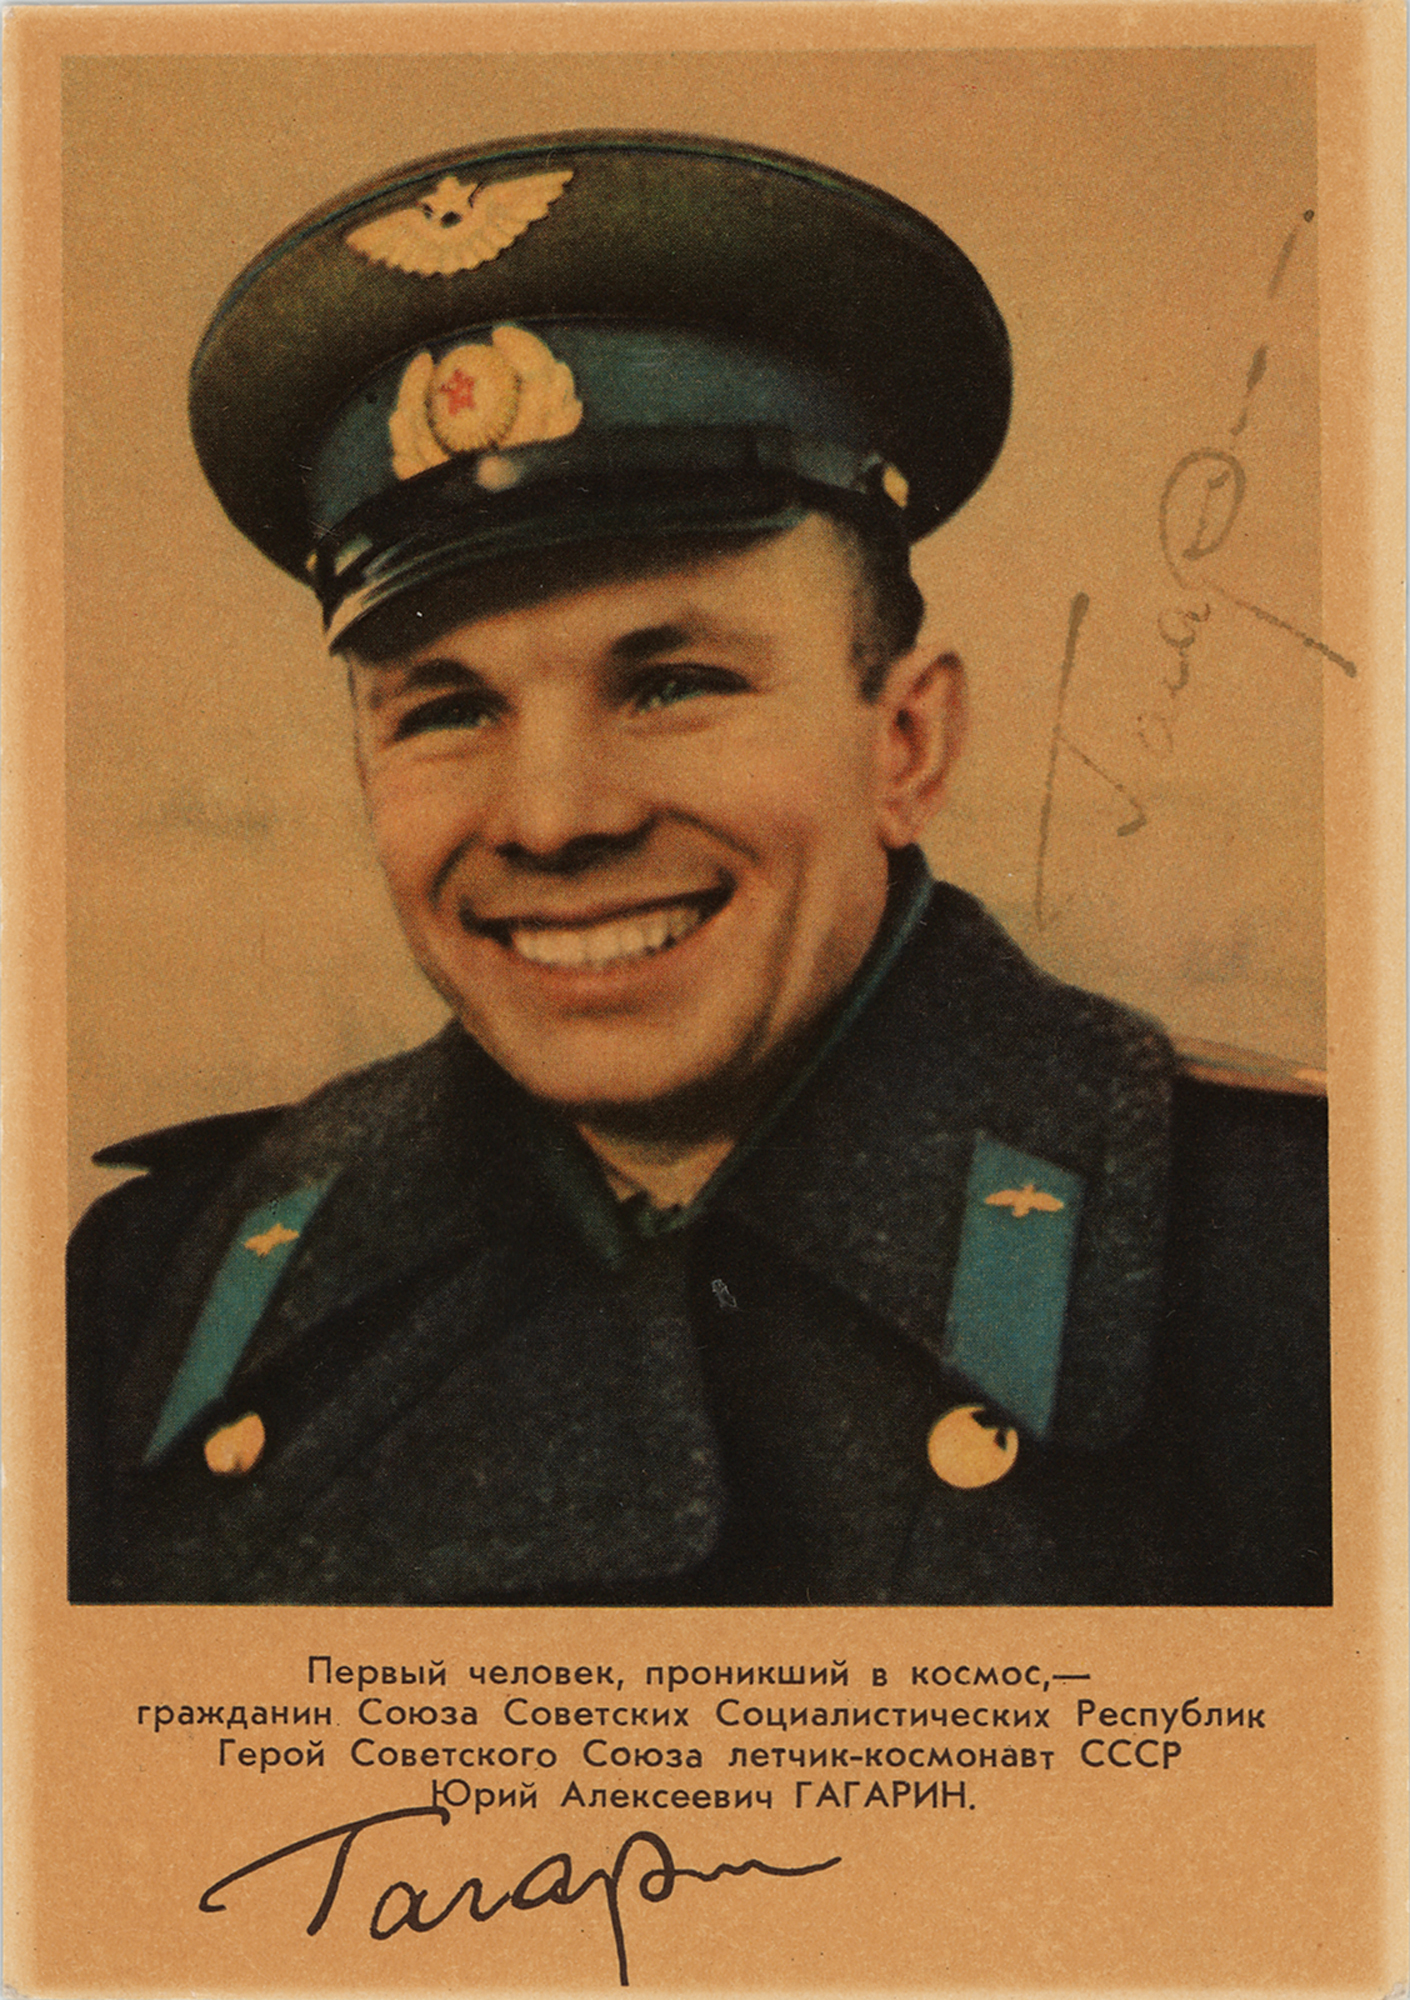 Lot #403 Yuri Gagarin Signed Photograph